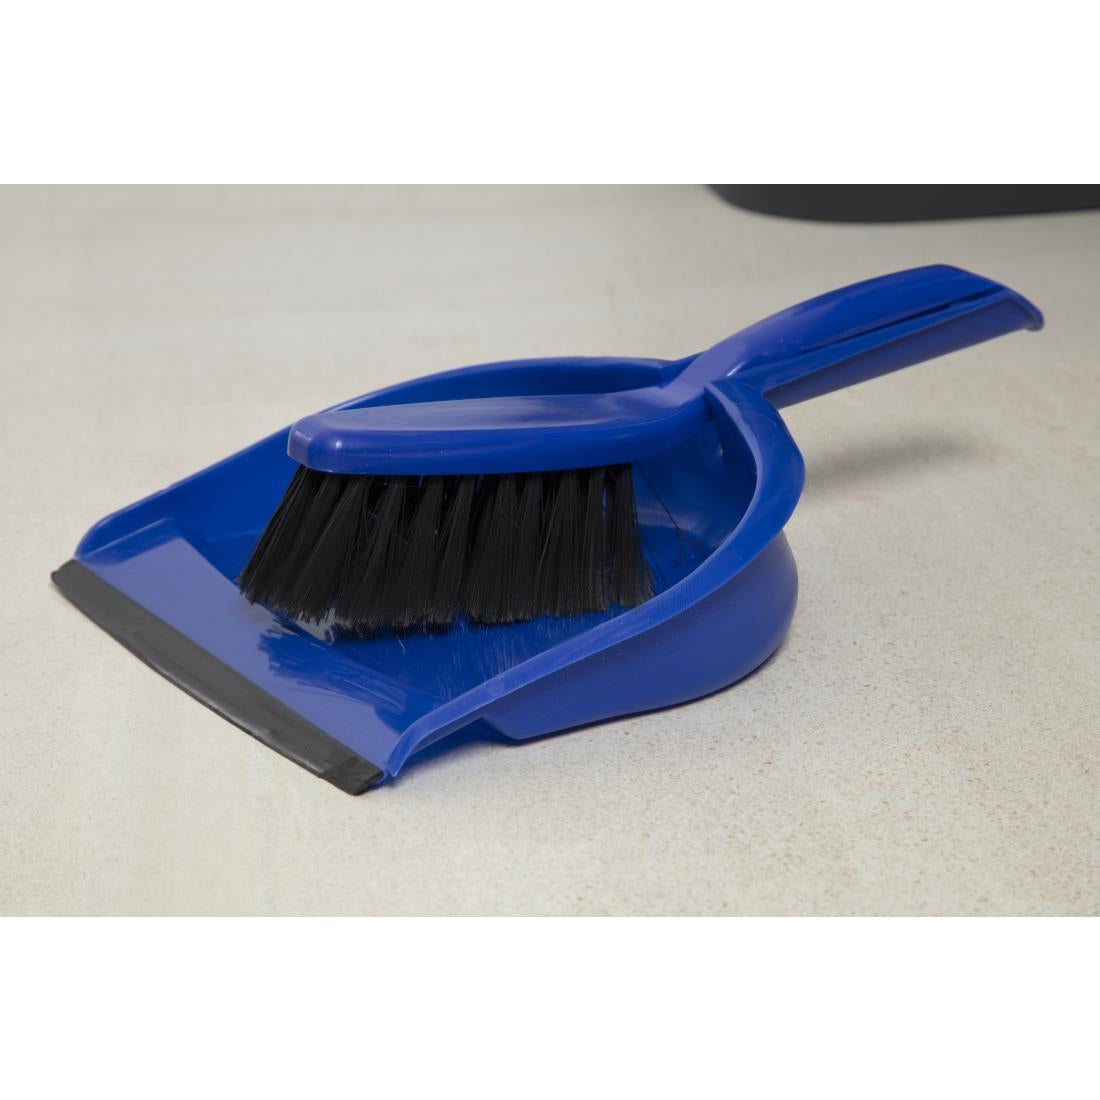 Jantex Soft Dustpan & Brush Set Blue